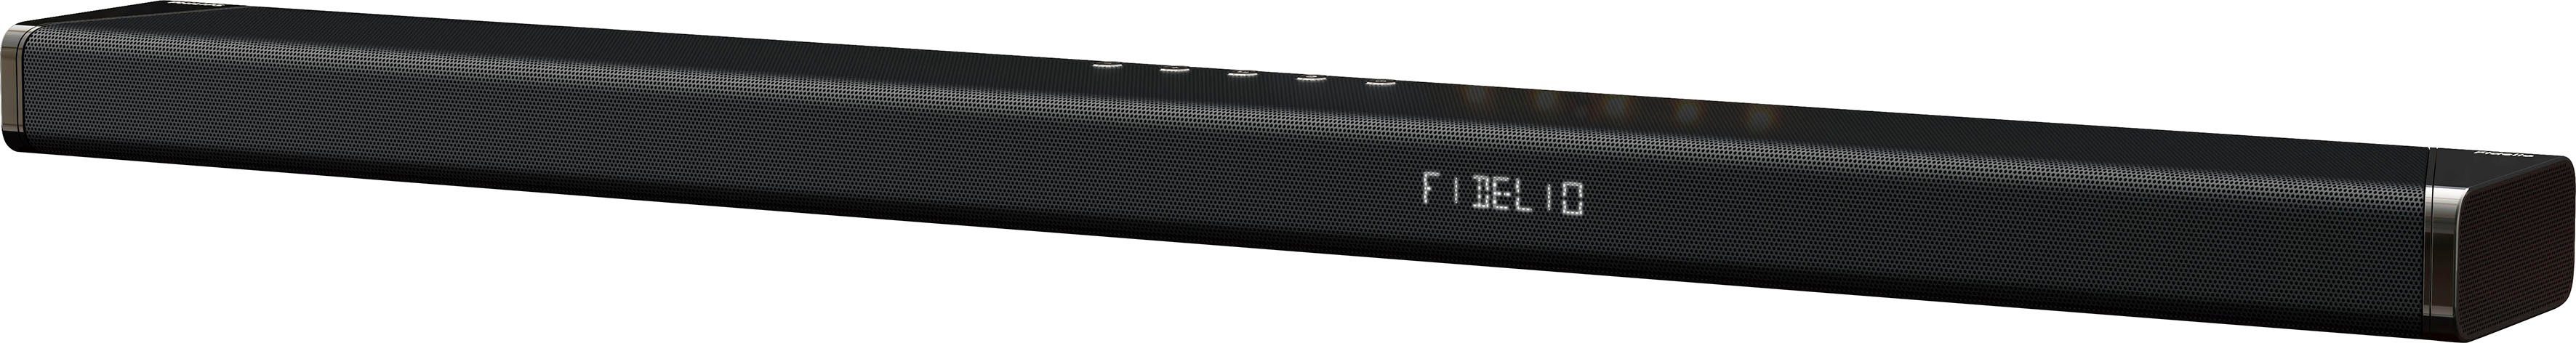 (Bluetooth, W) B95 410 Fidelio Soundbar 5.1.2 Philips WLAN,